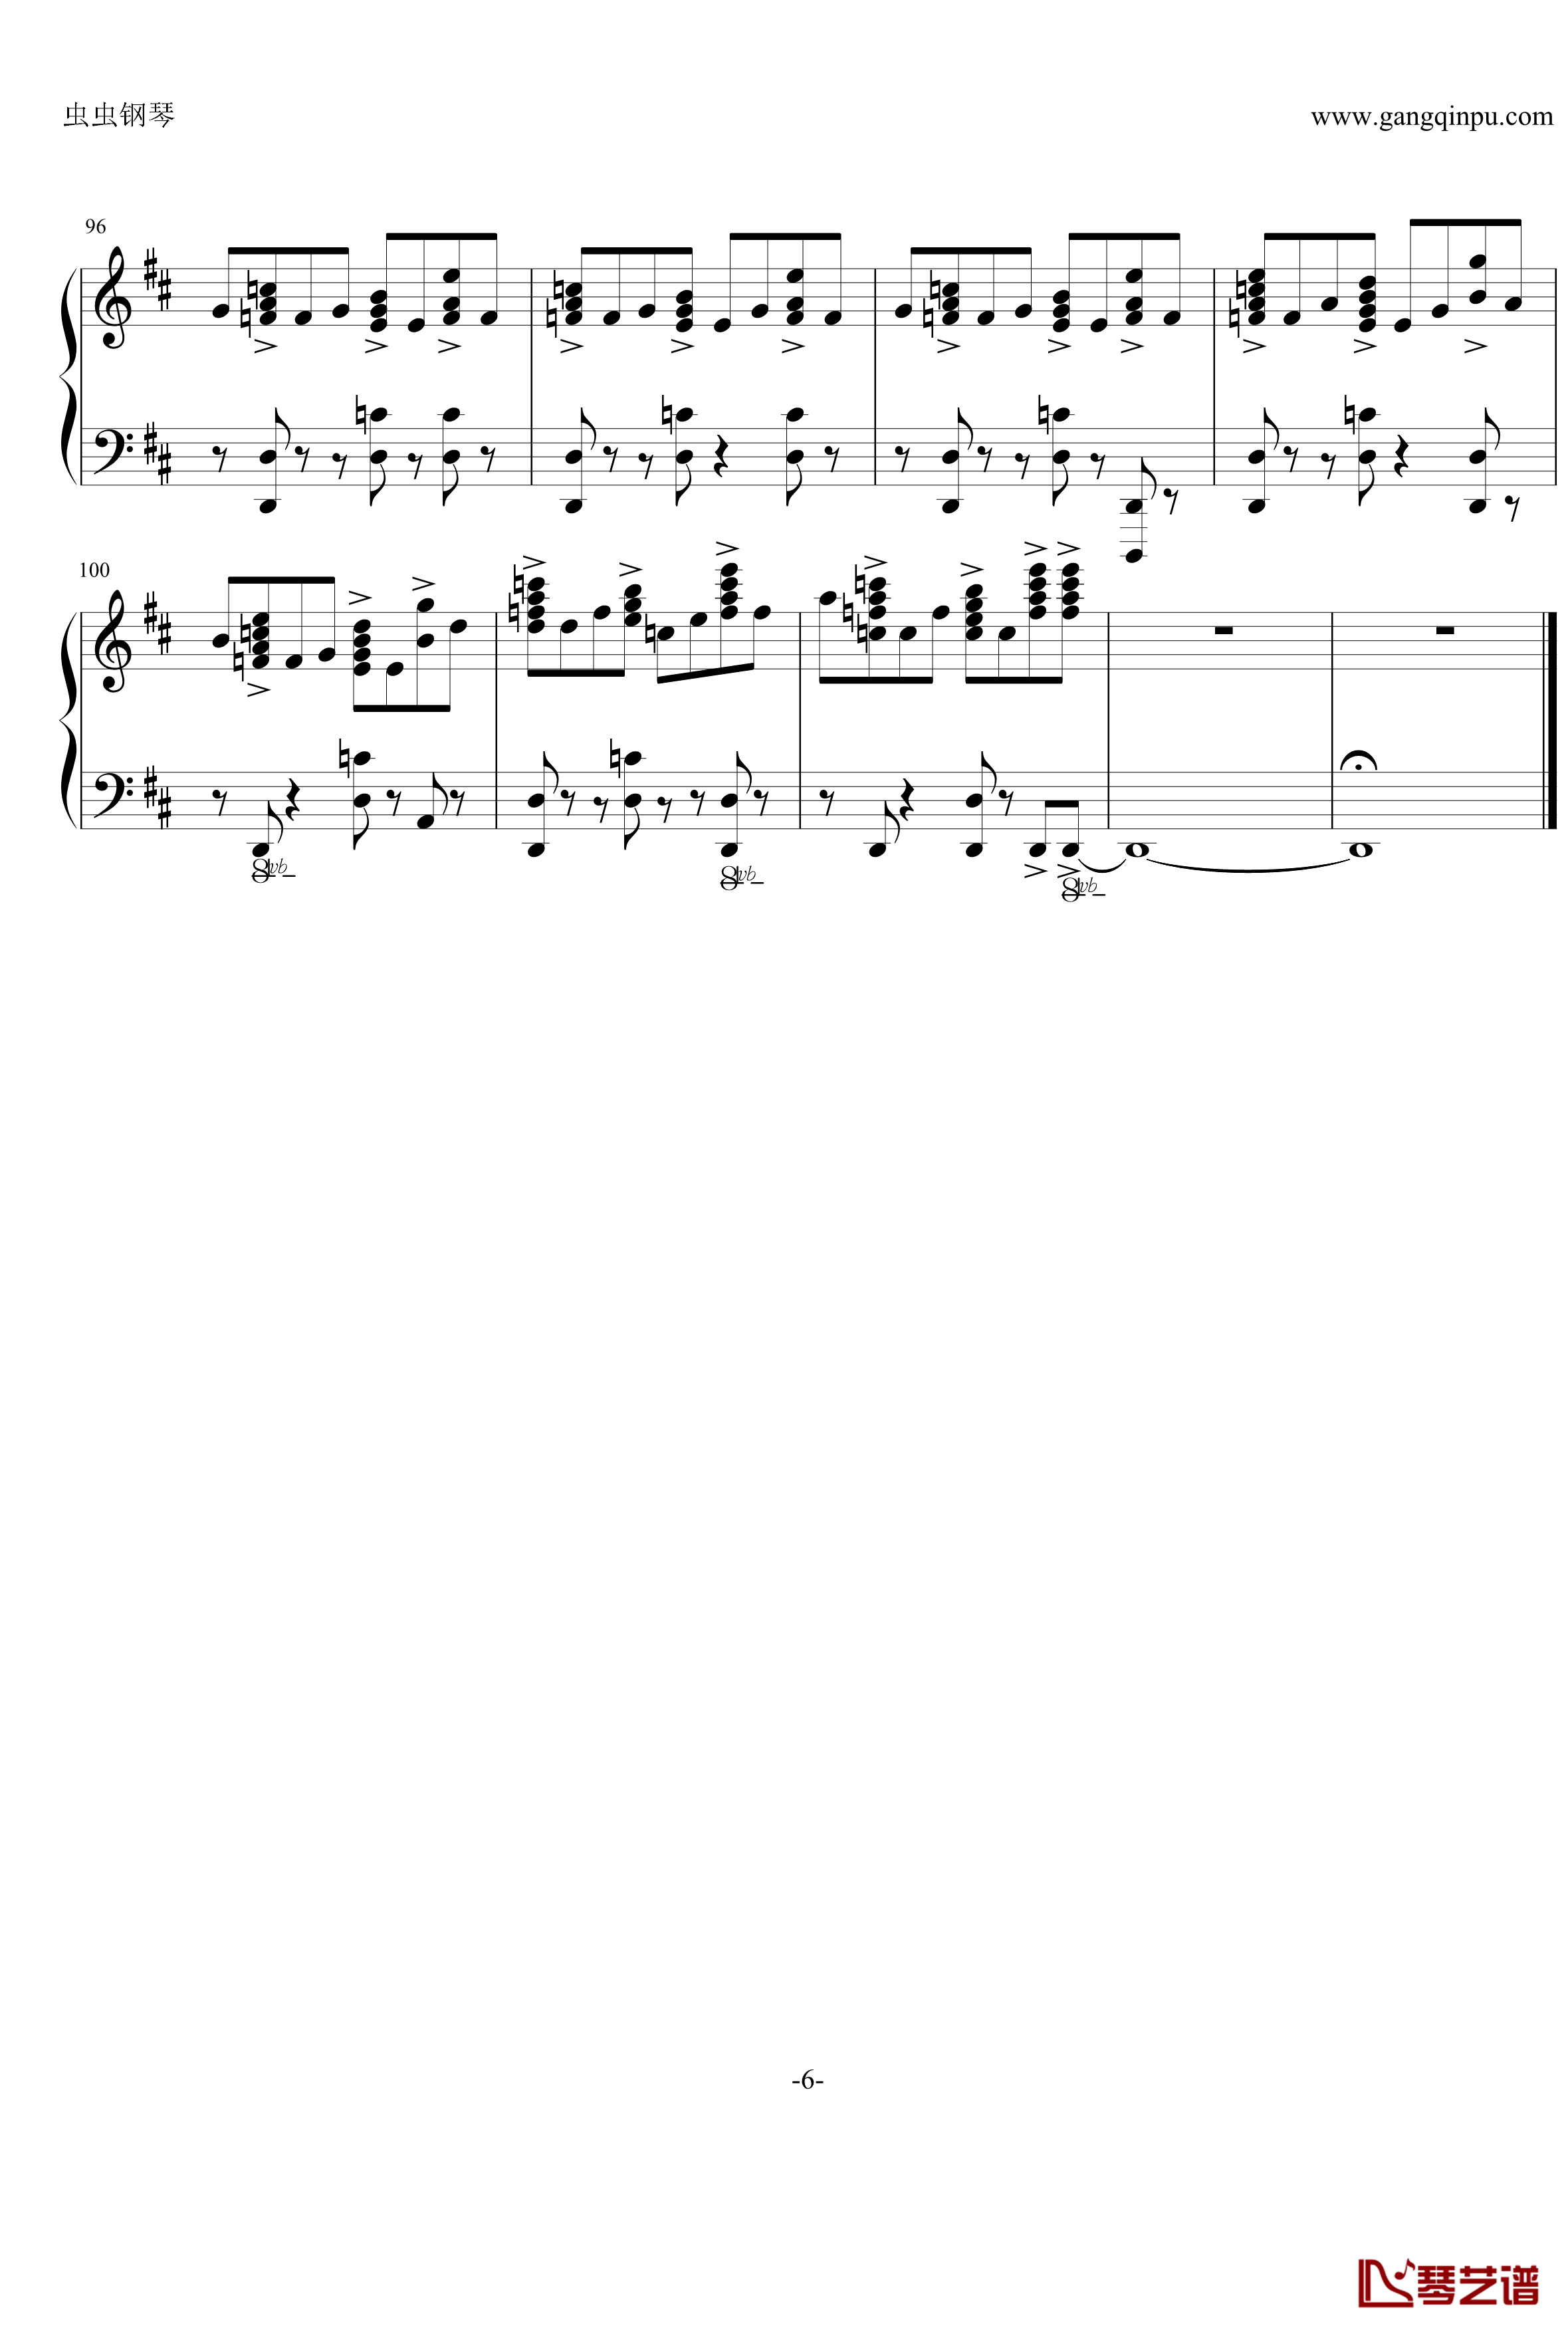 最终幻想13雷霆主题音乐钢琴谱-ライトニングのテーマ 閃光-最终幻想6